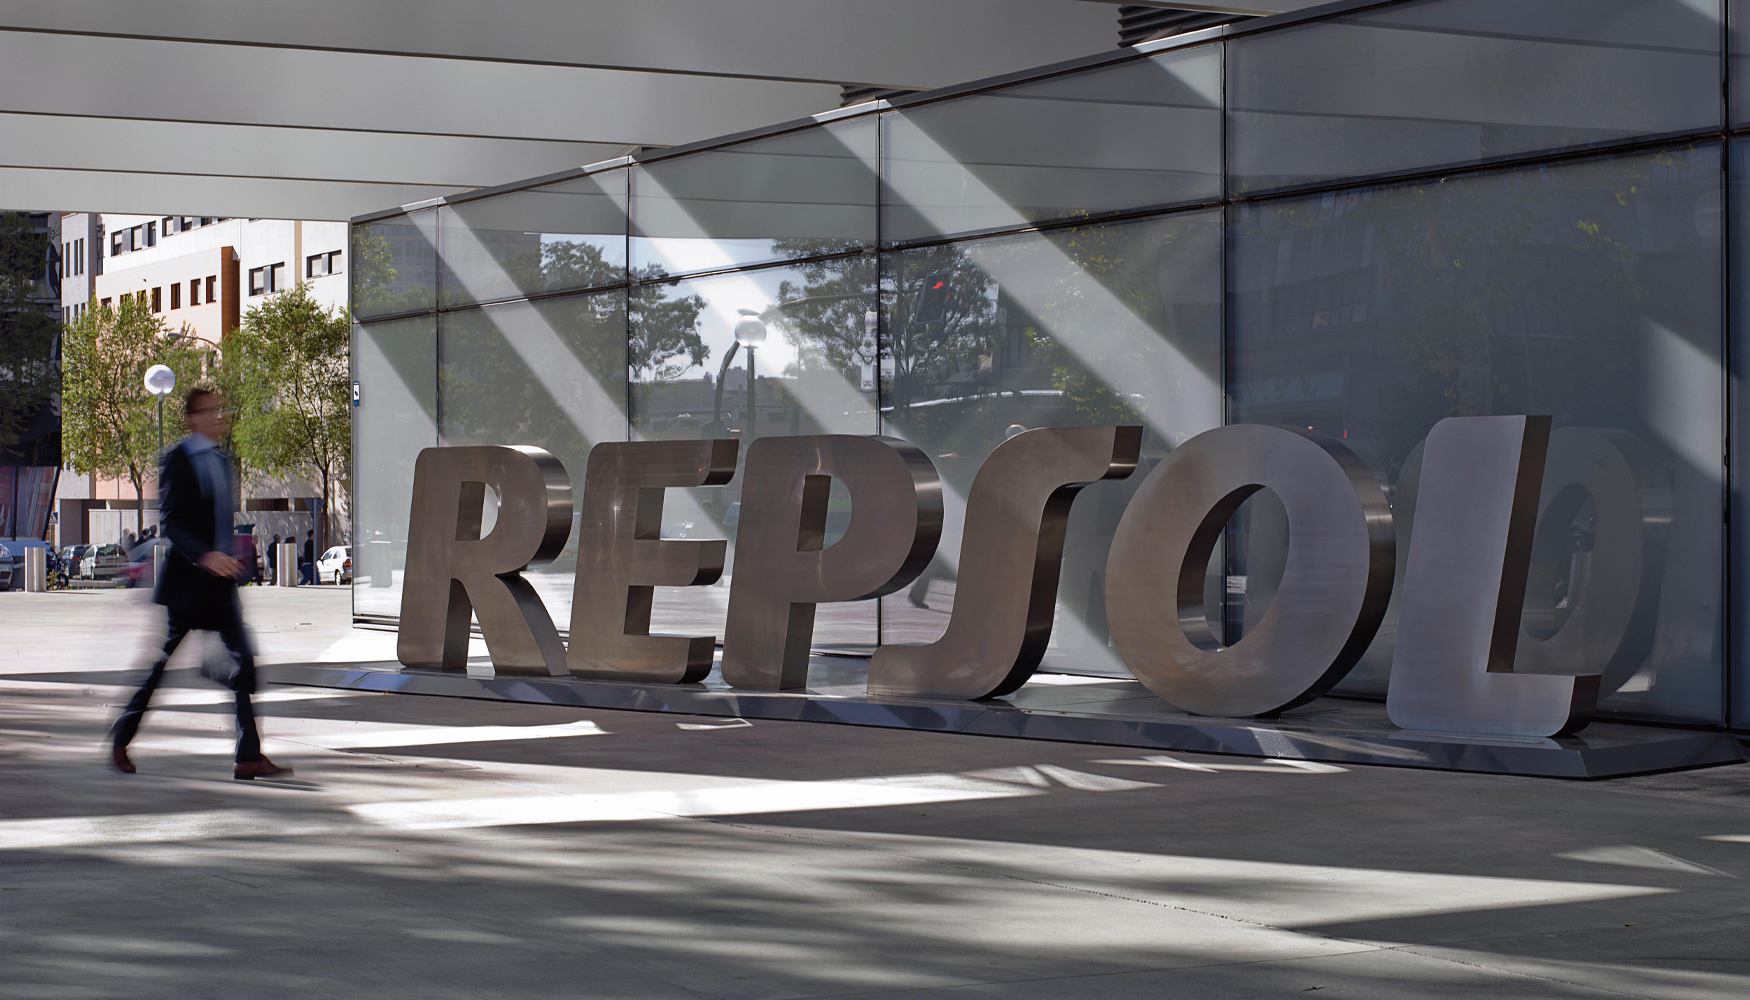  En un contexto inflacionista, Repsol destin ms de 500 millones de euros a descuentos adicionales en los combustibles en sus estaciones de servicio...